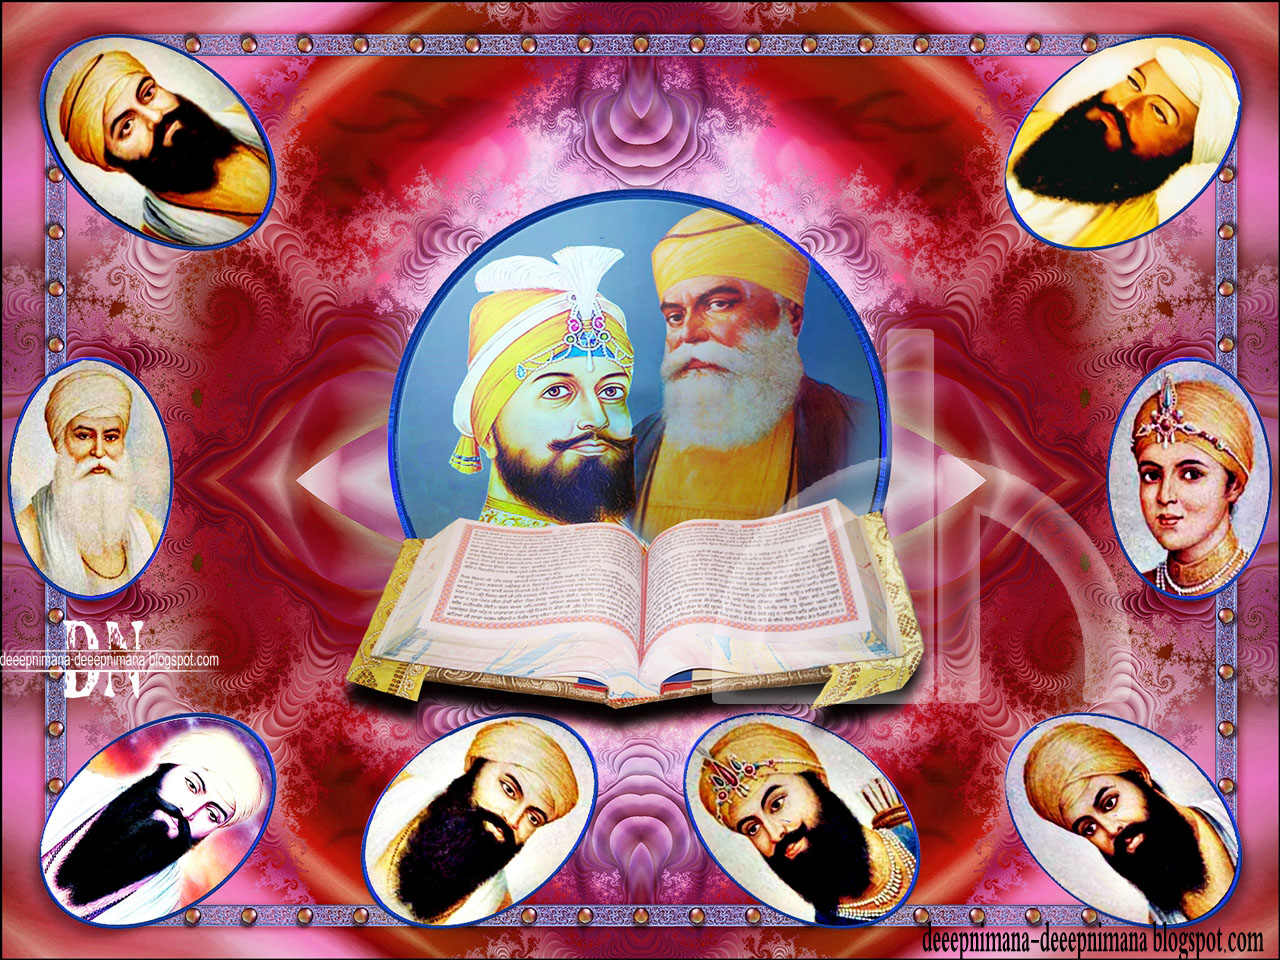 sikh gurus sikhi wallpapers guru nanak ji guru gobind ji sikhism